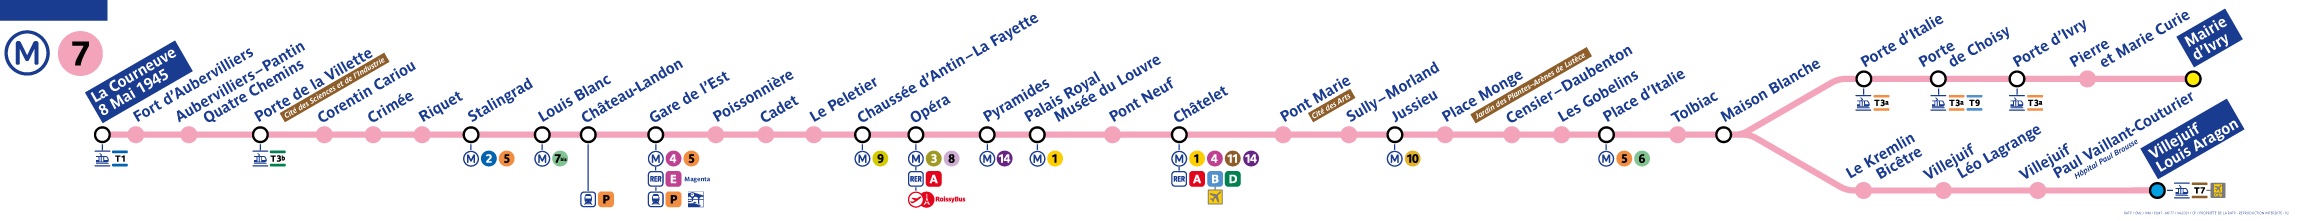 plan ligne 7 metro paris